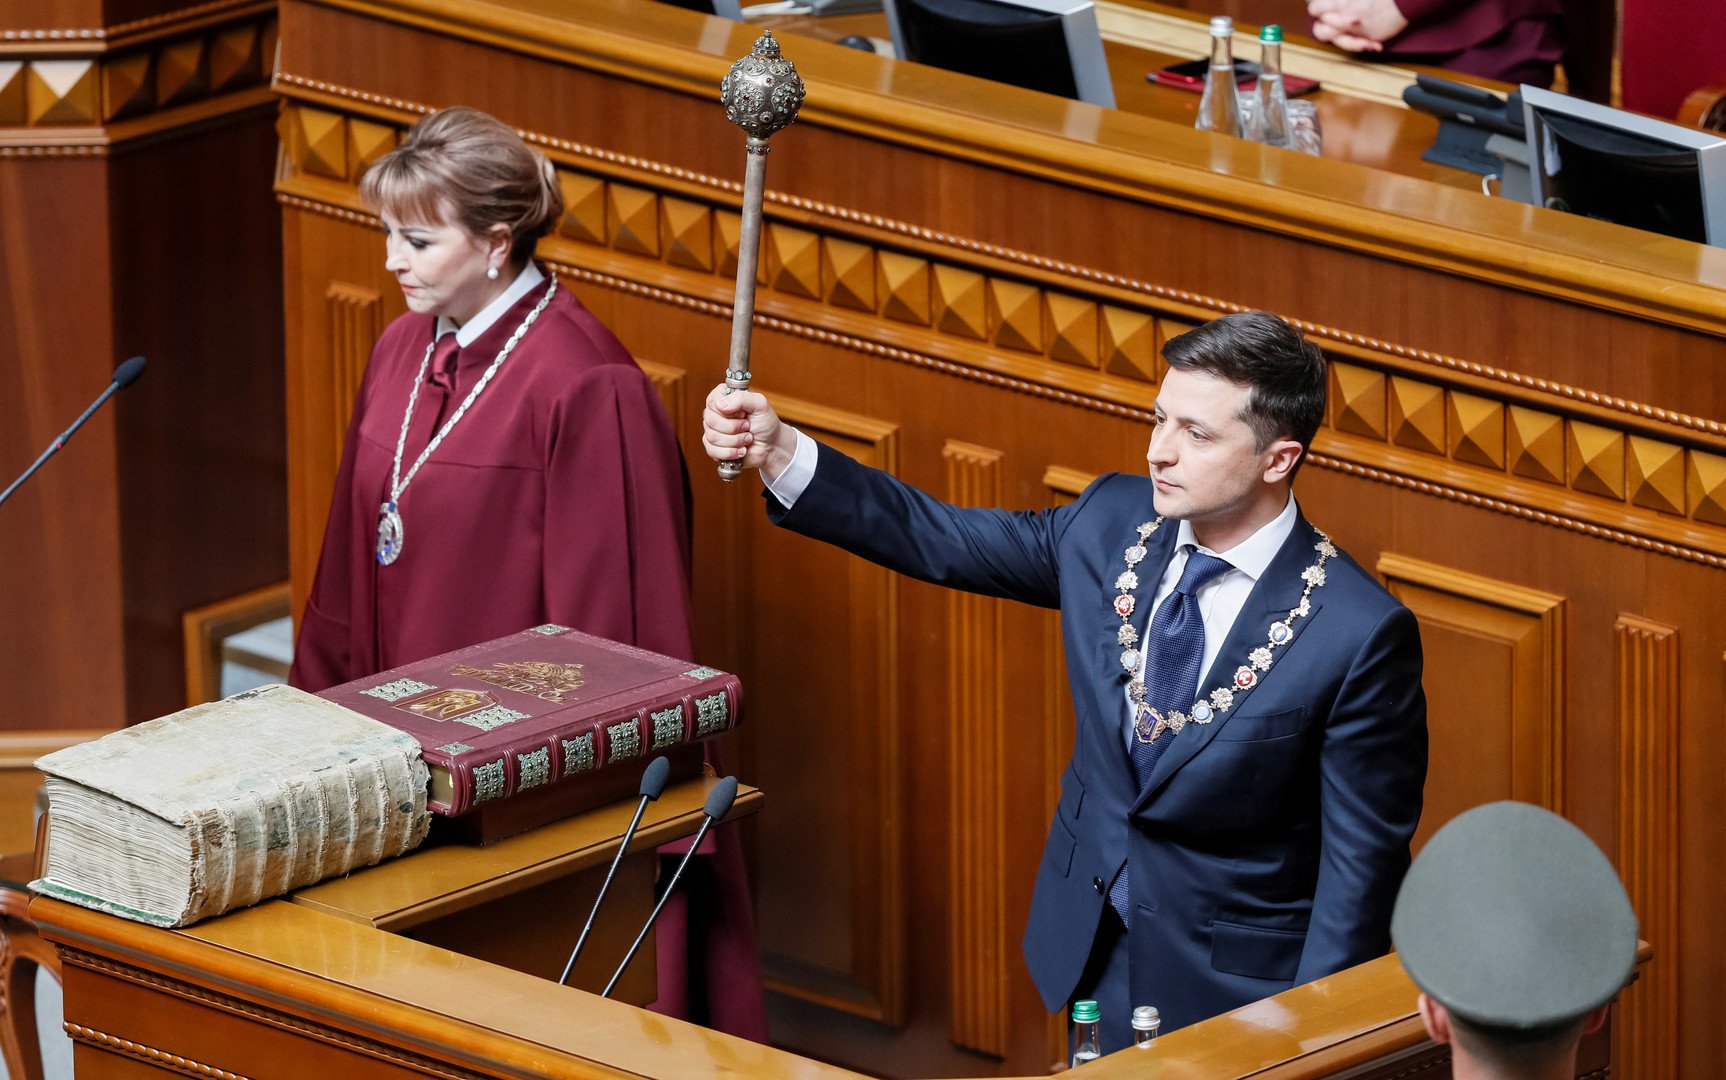 زيلينسكي يؤدي اليمين الدستورية رئيسا لأوكرانيا